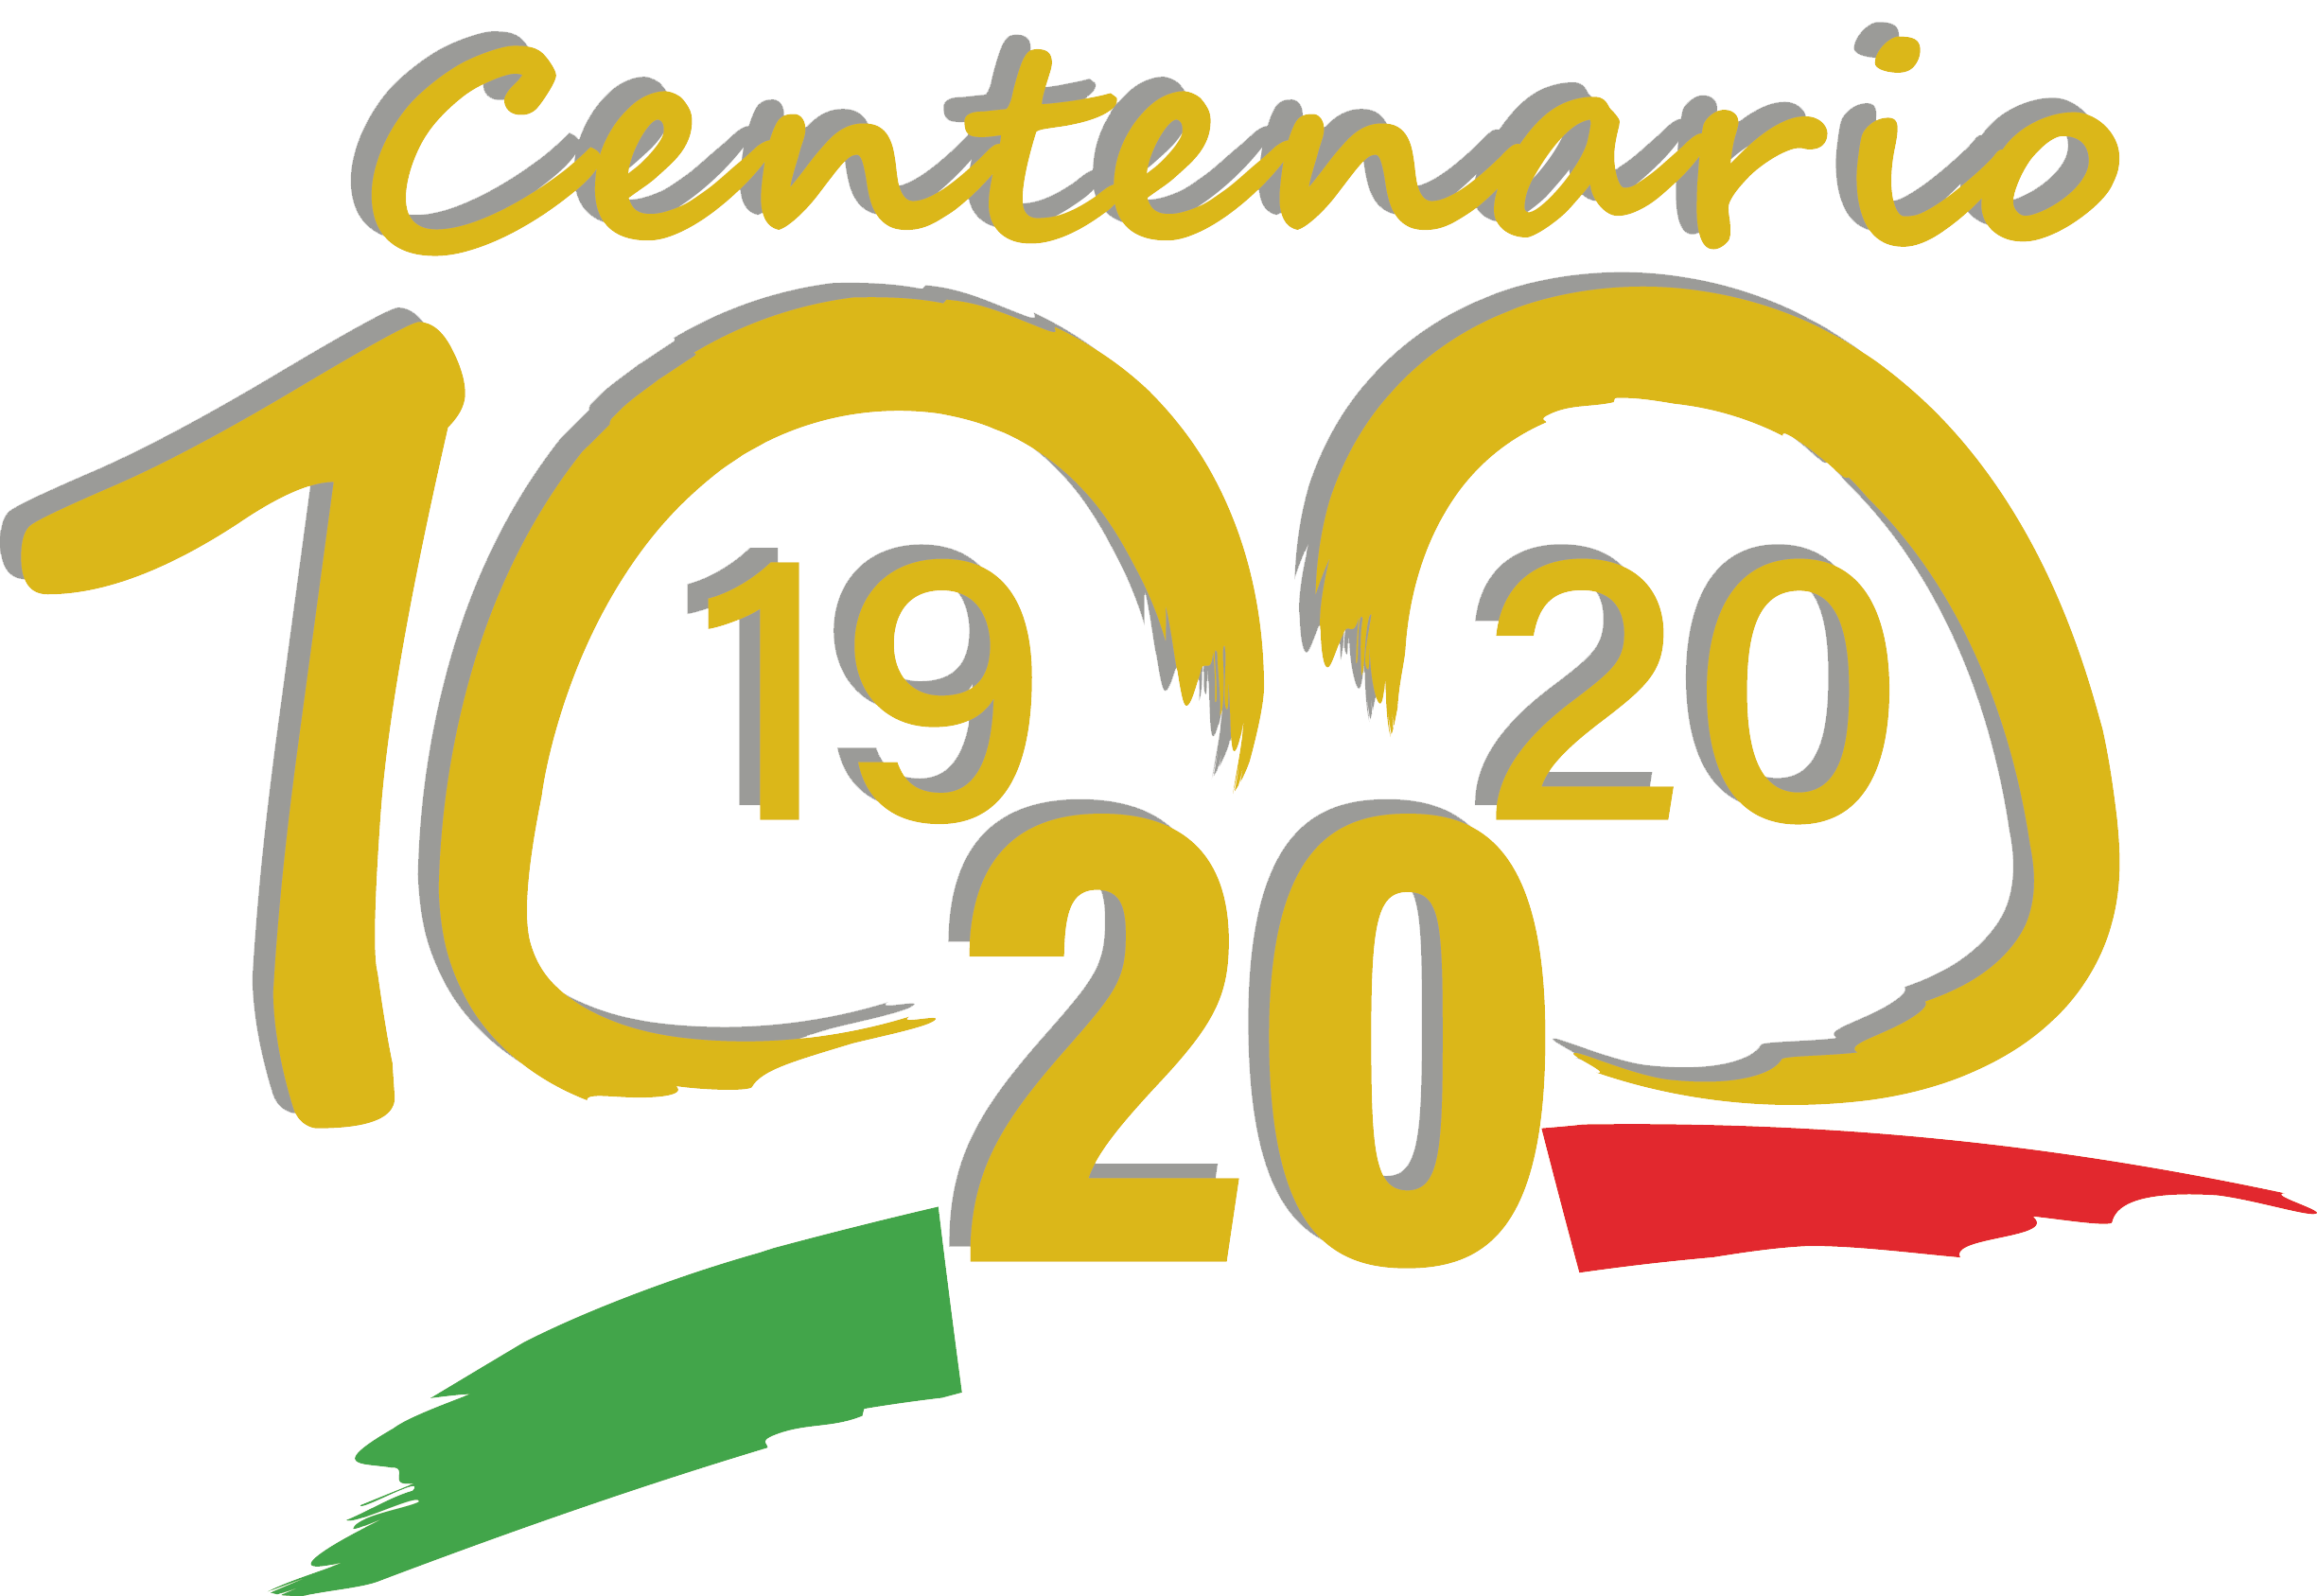 Logo del centenario dell'UICI. In alto la scritta centenario in dorato.Al centro il numero 100 in dorato.In basso, il tricolore italiano con sopra l'indicazione dell'anno di fondazione (1920) e dell'anno attuale (2020)